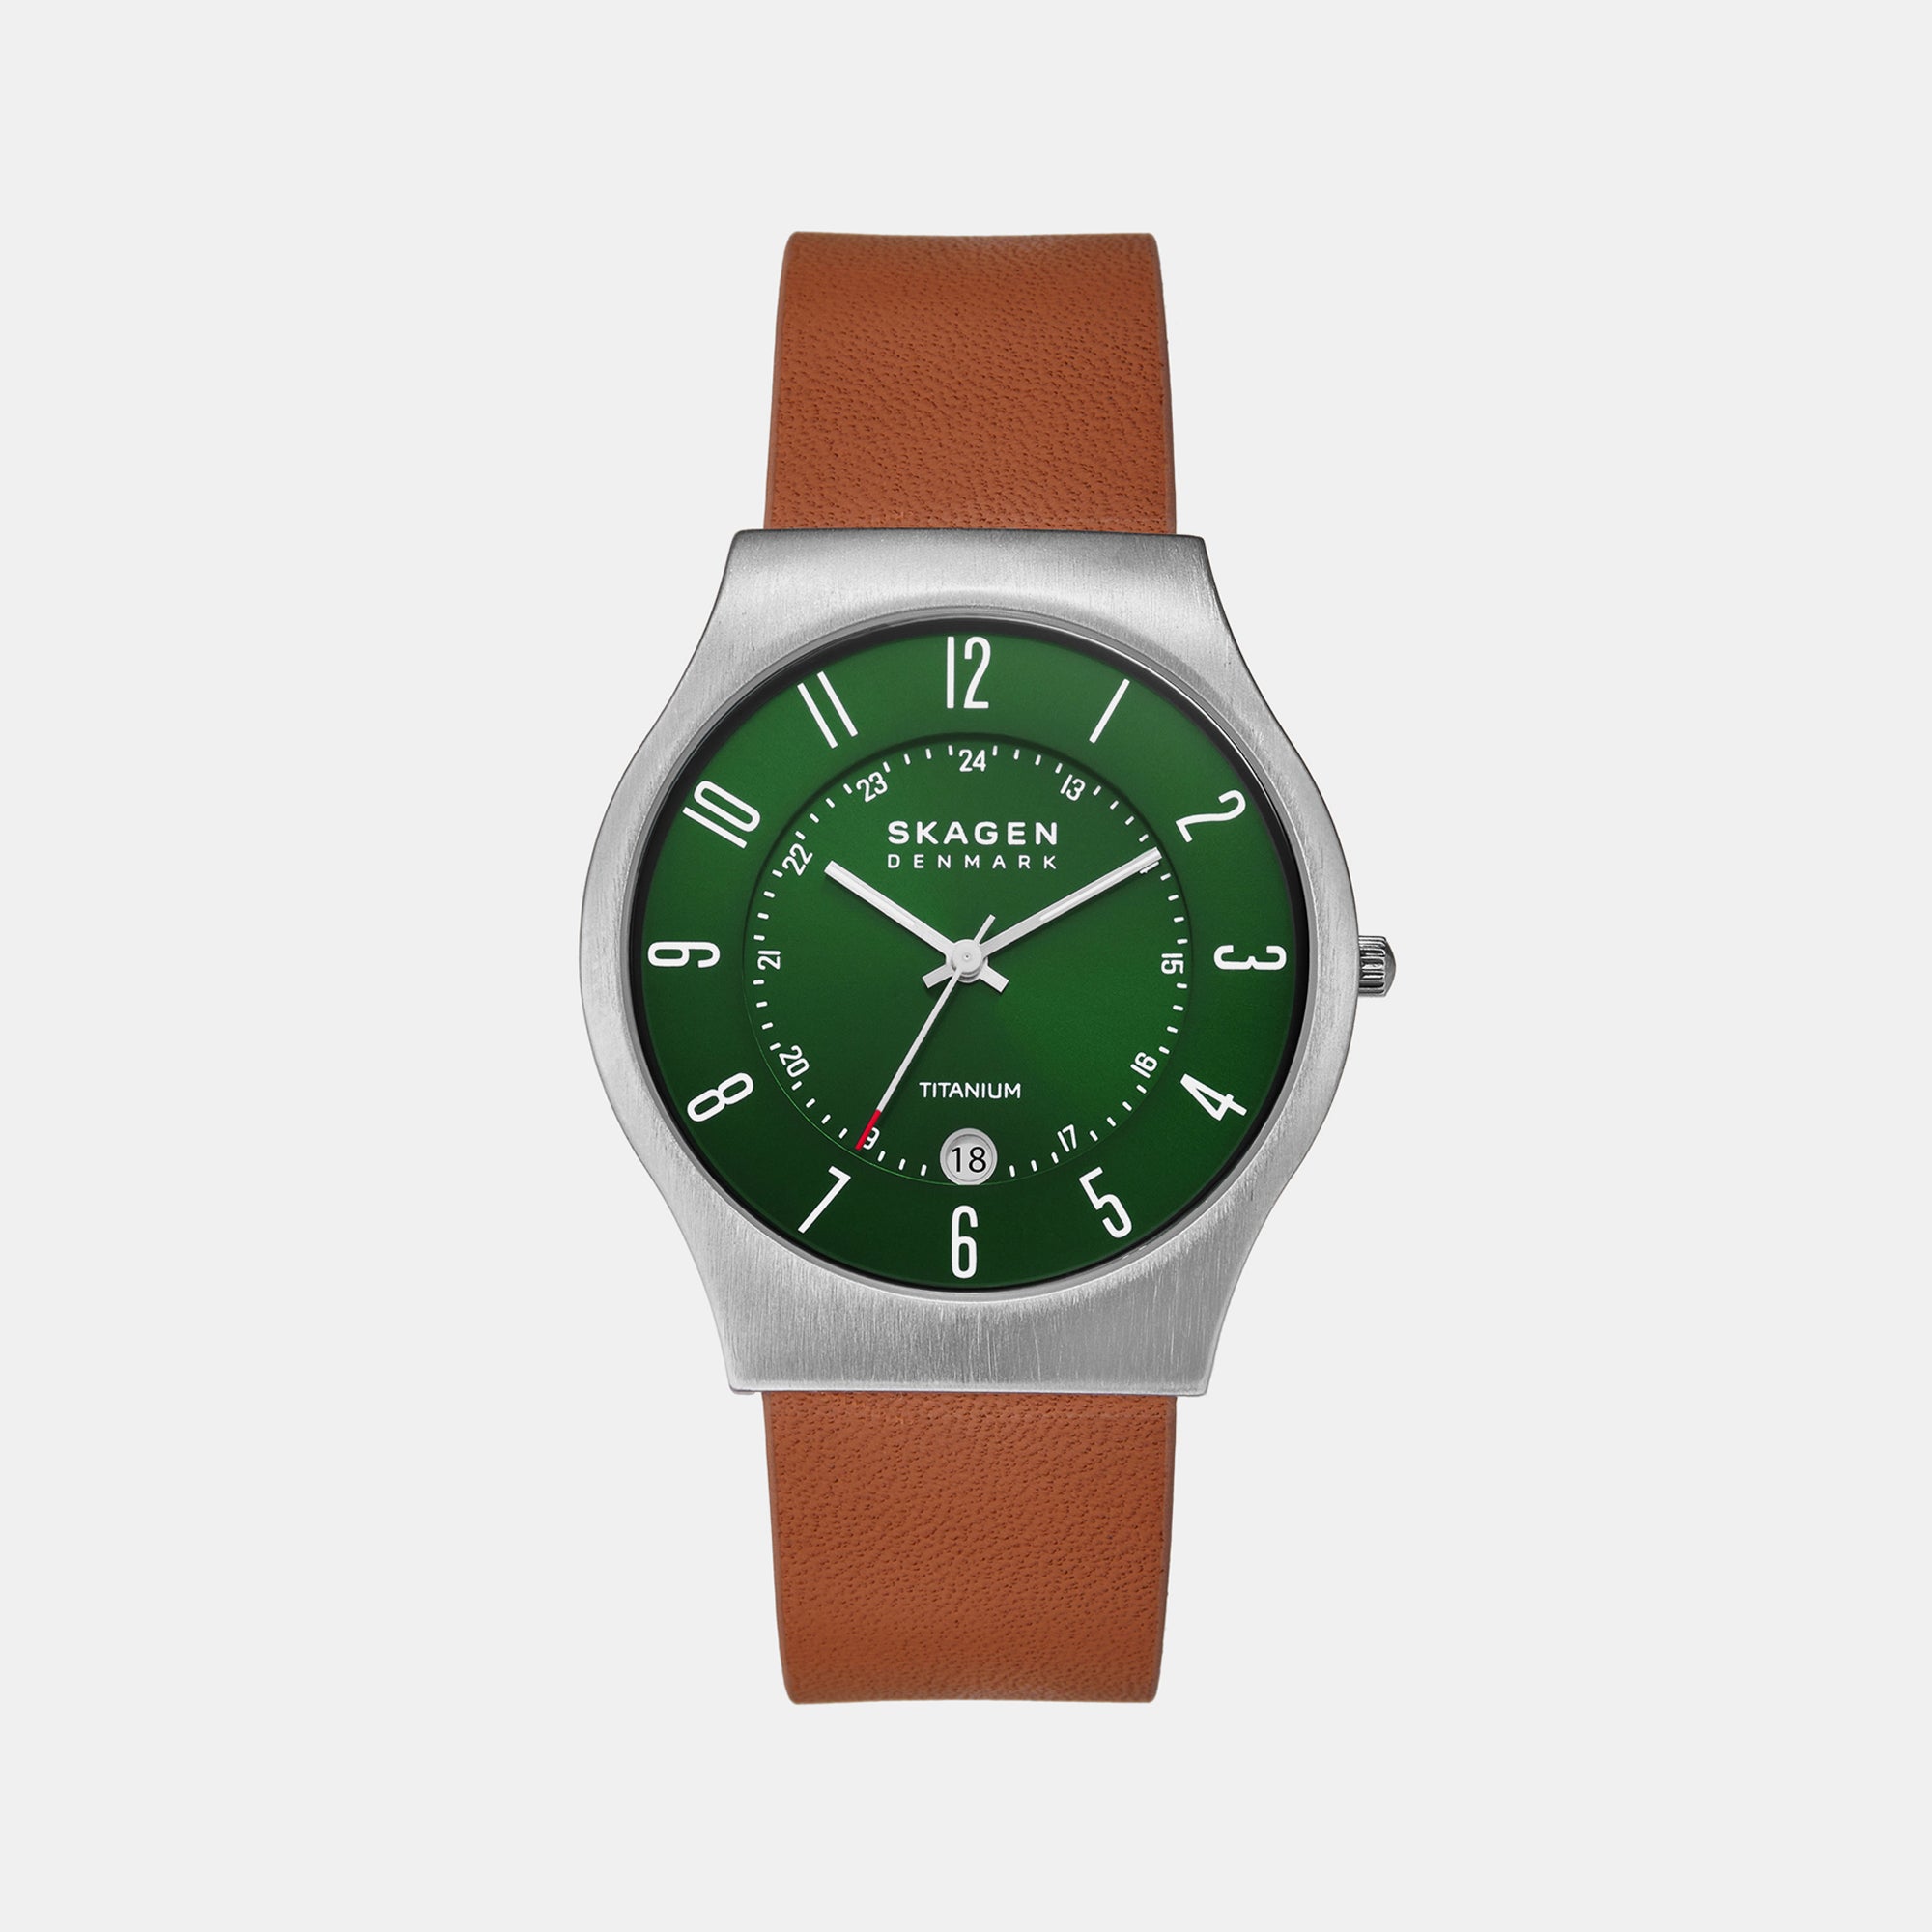 Shop SKAGEN DENMARK Unisex Quartz Watches Analog Watches by nopple | BUYMA